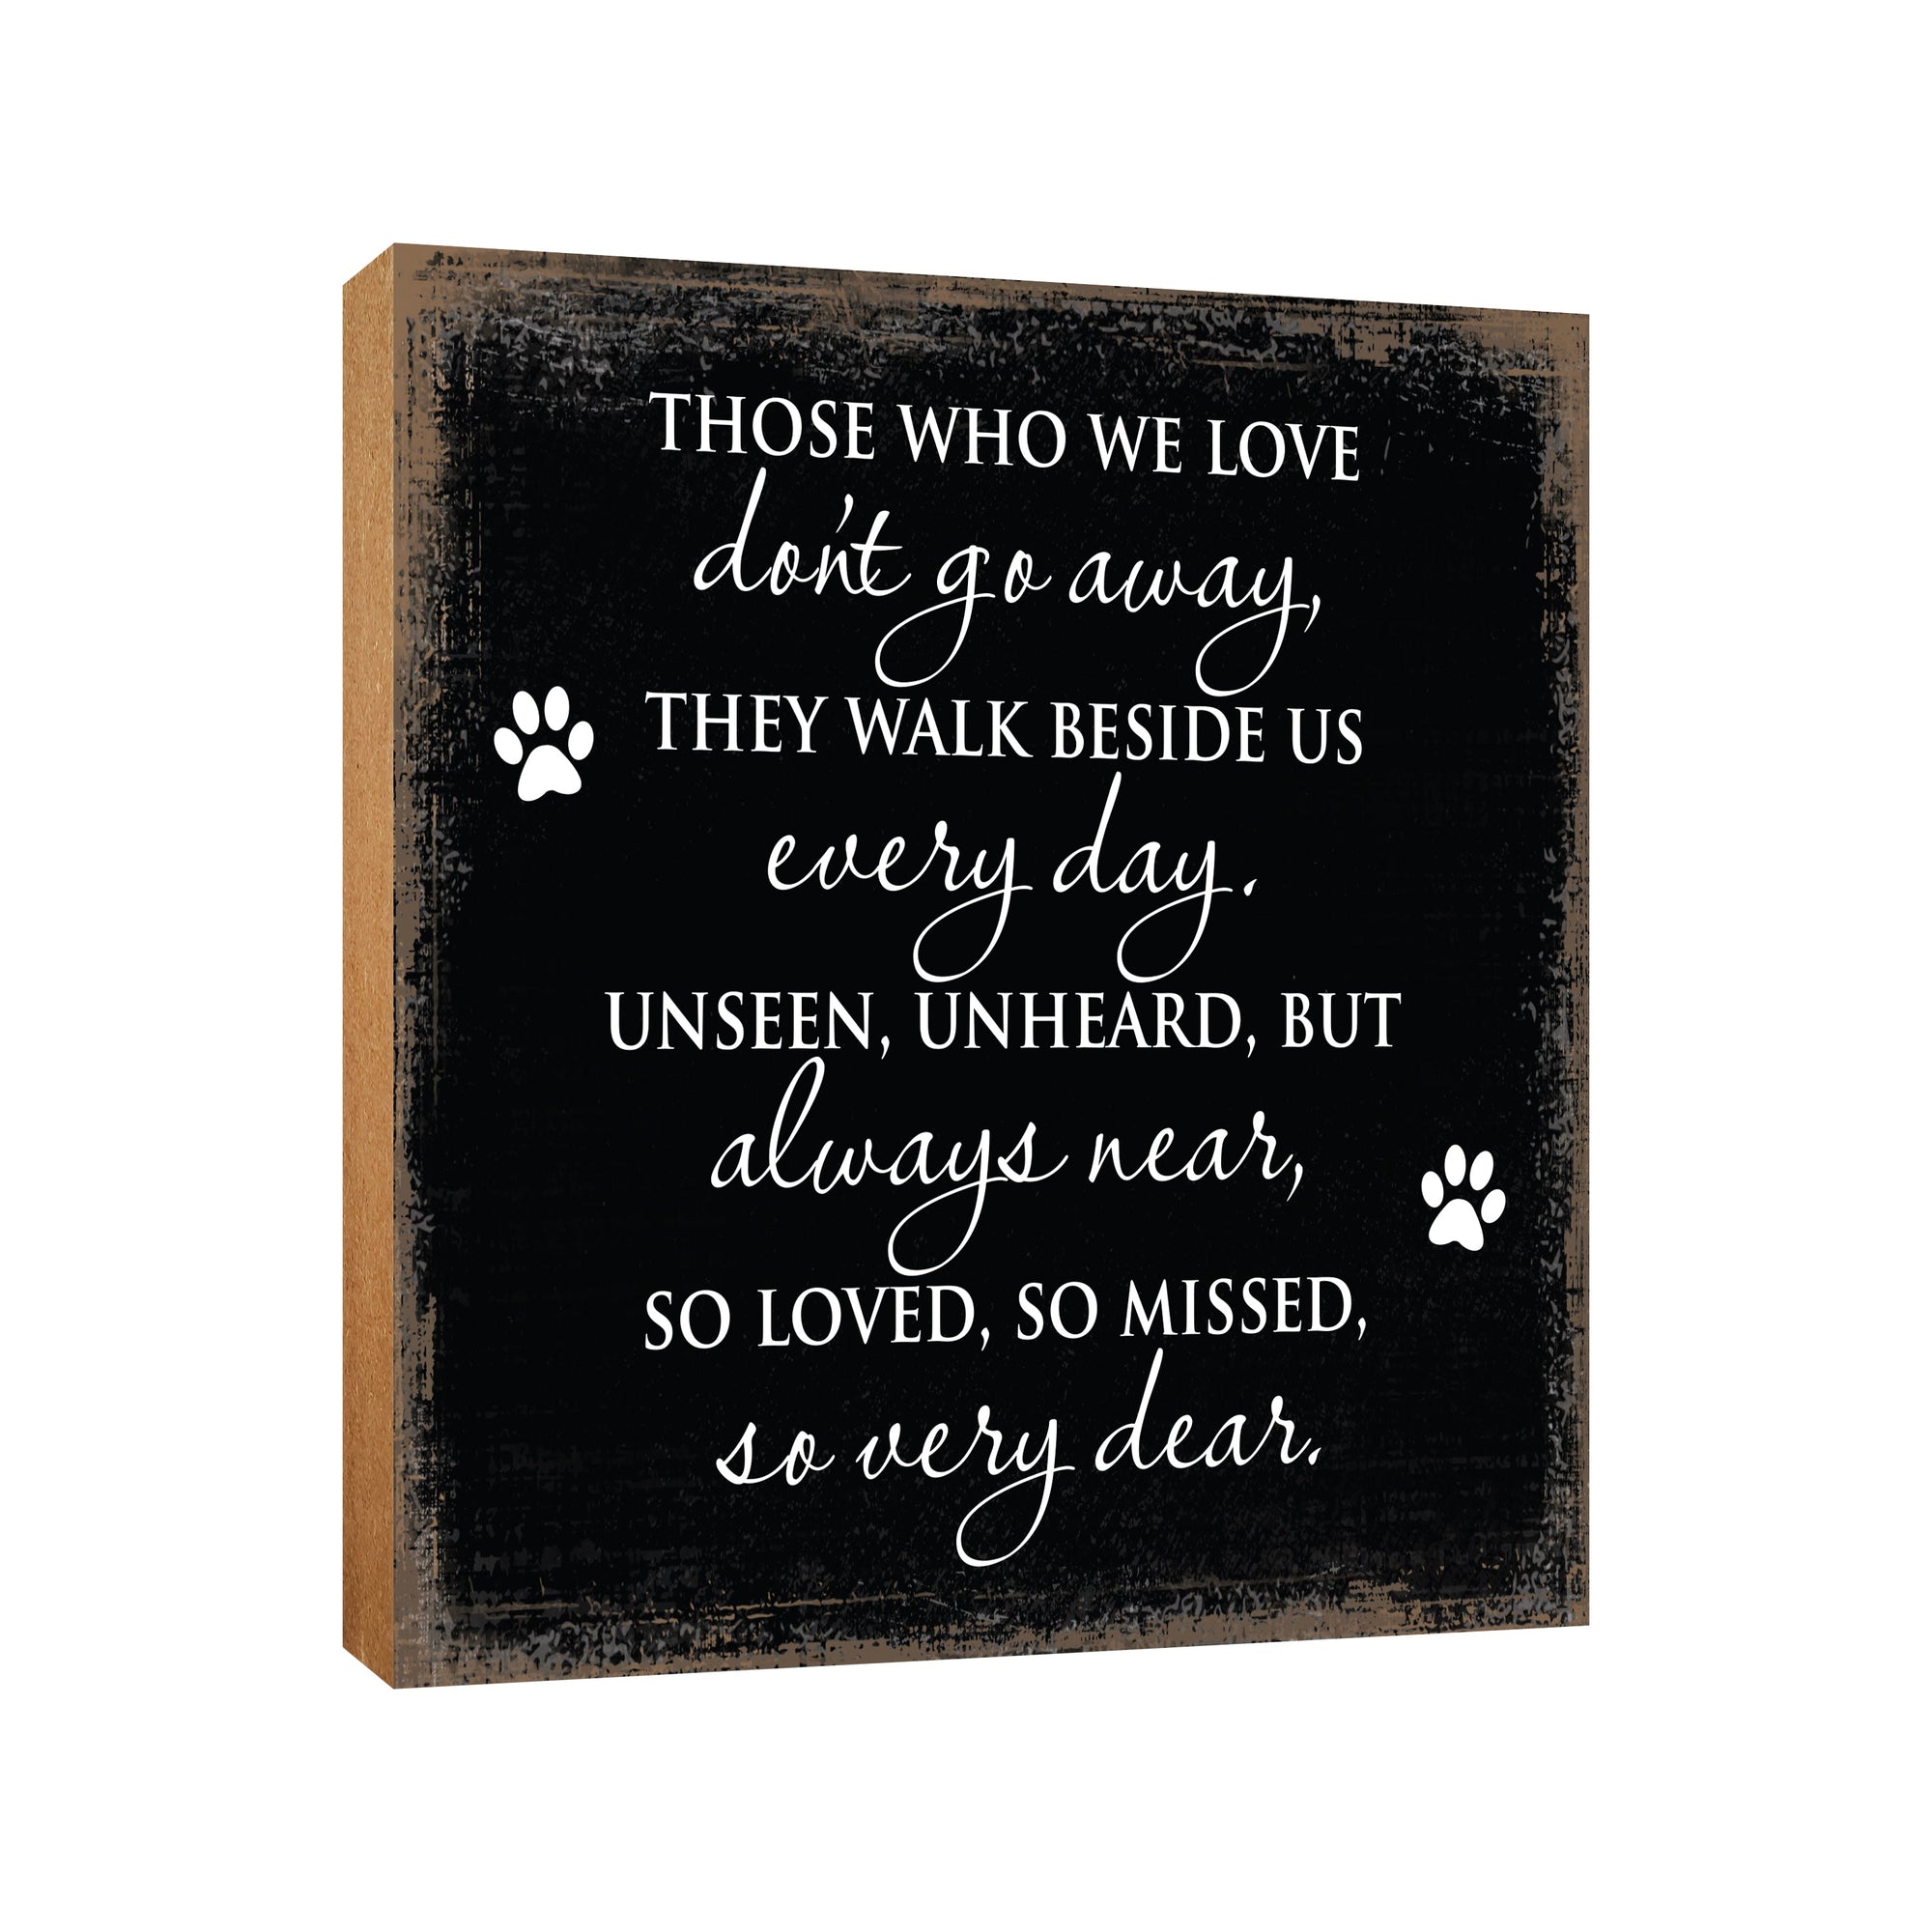 Pet Memorial shelf decor Plaque Décor - Those Who We Love Don't Go Away